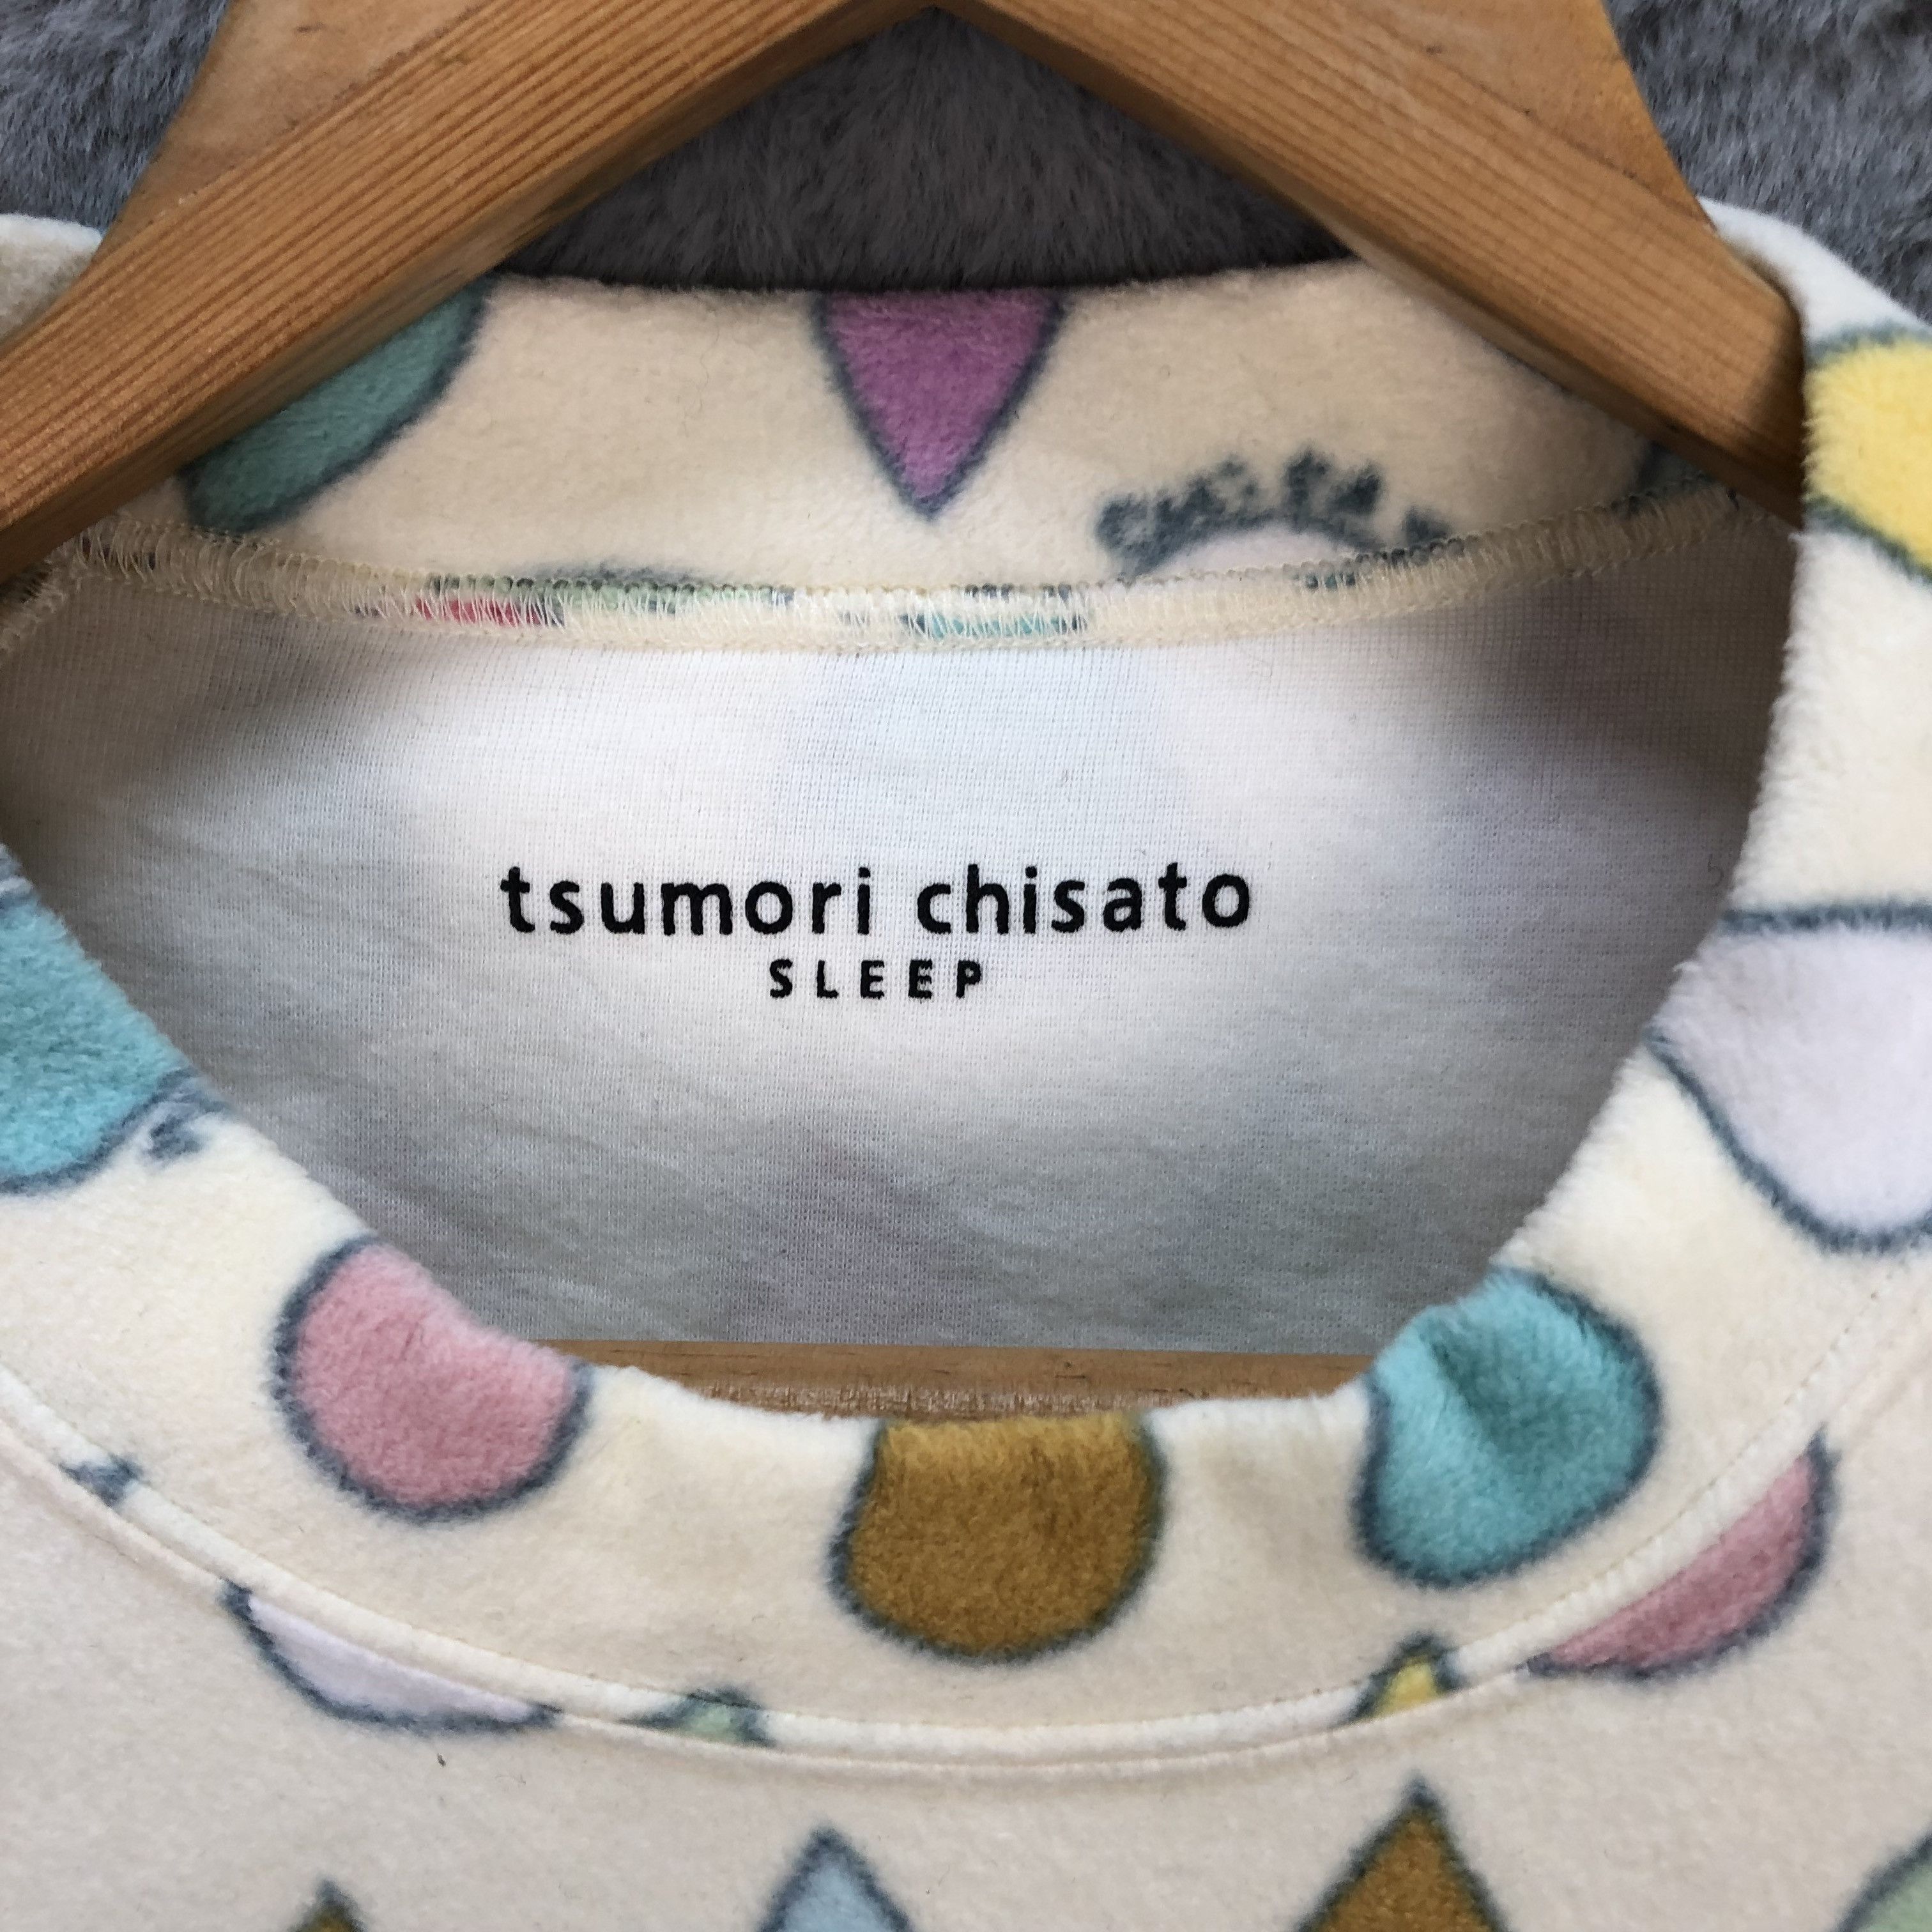 Tsumori Chisato Sleep Water Drop Fleece Sweatshirt #5683-202 - 7